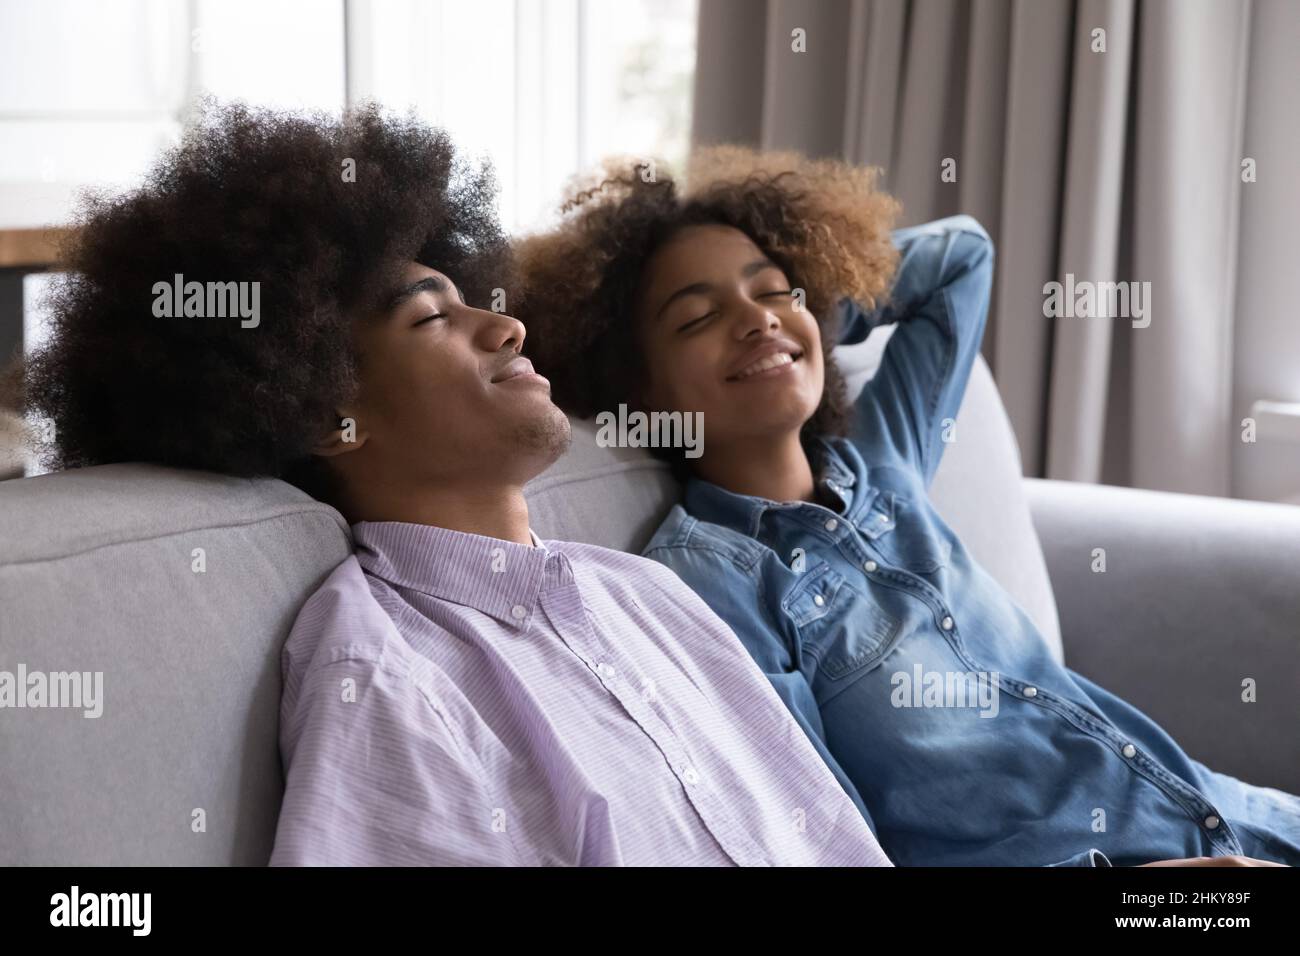 Un couple heureux d'adolescents indépendants noirs se détendant sur un canapé Banque D'Images